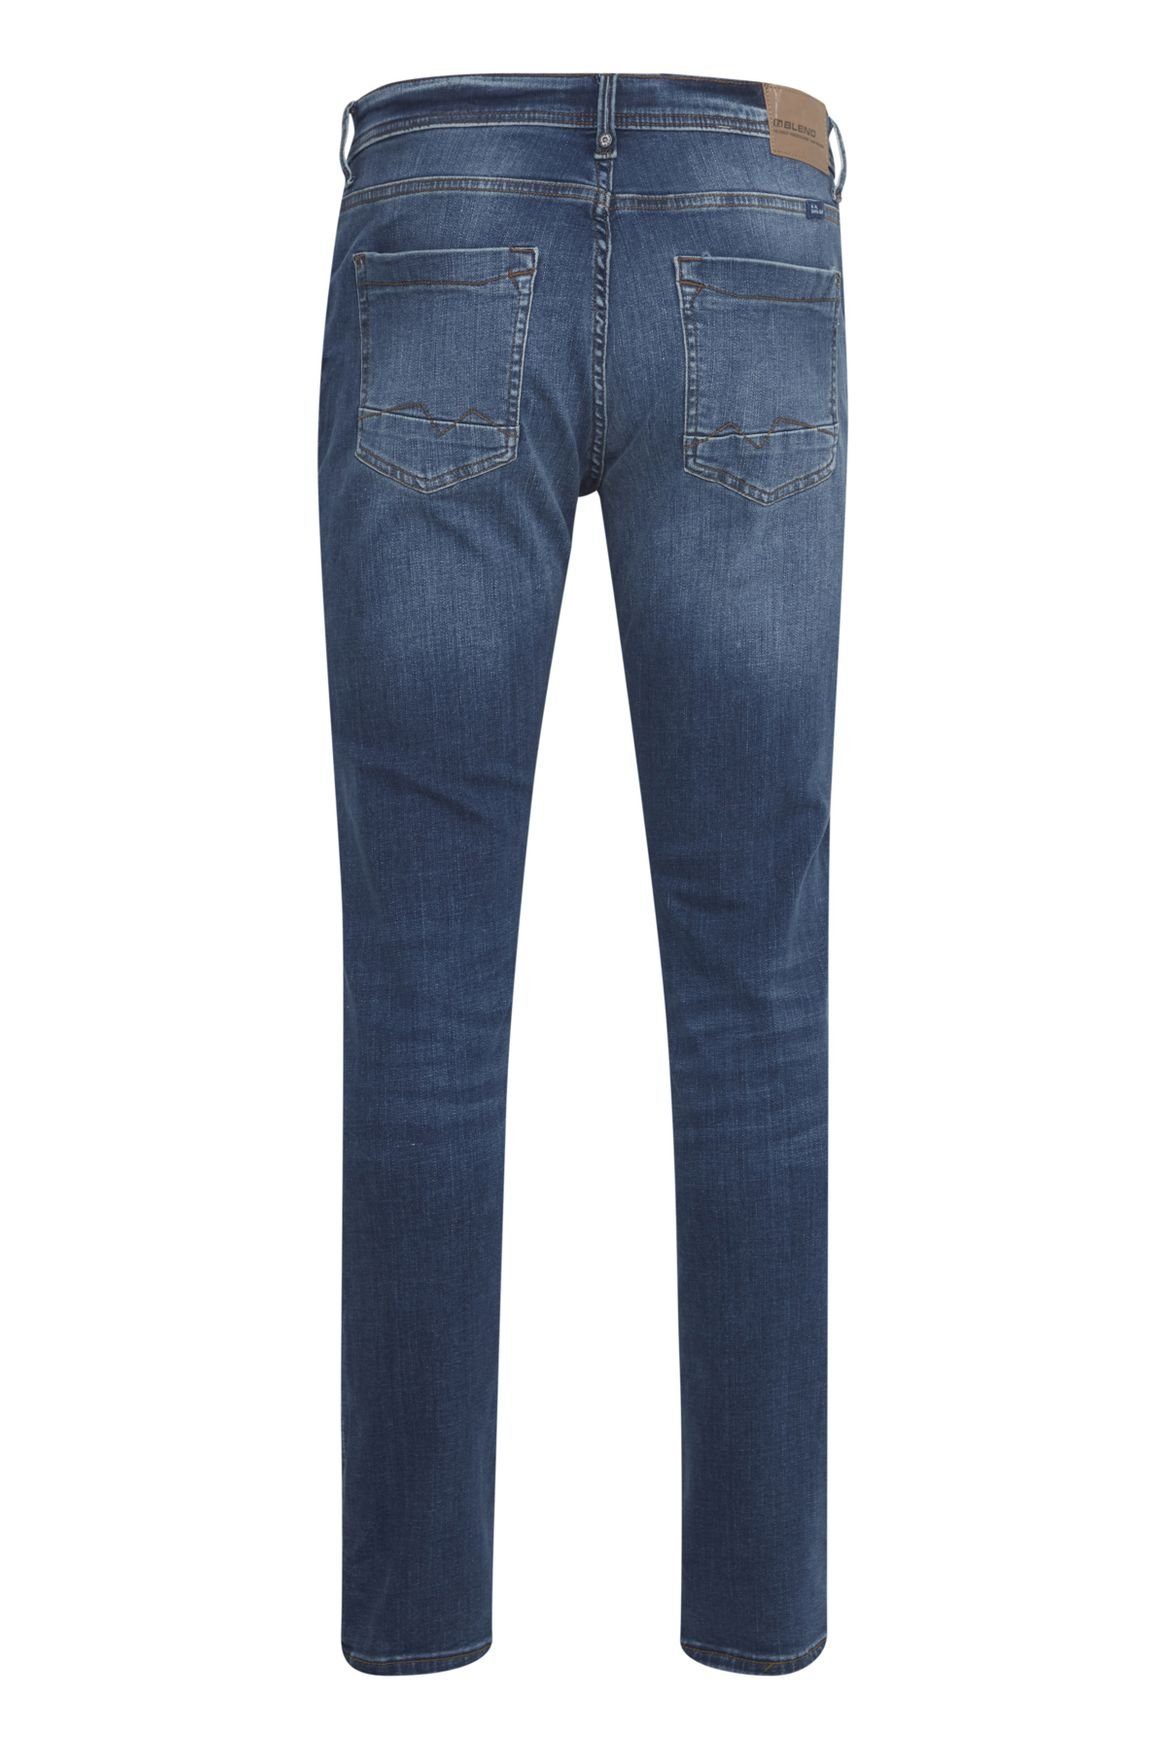 Hose Slim-fit-Jeans Washed Fit Denim in TWISTER FIT Slim 5196 Basic Blau Blend Jeans Stoned